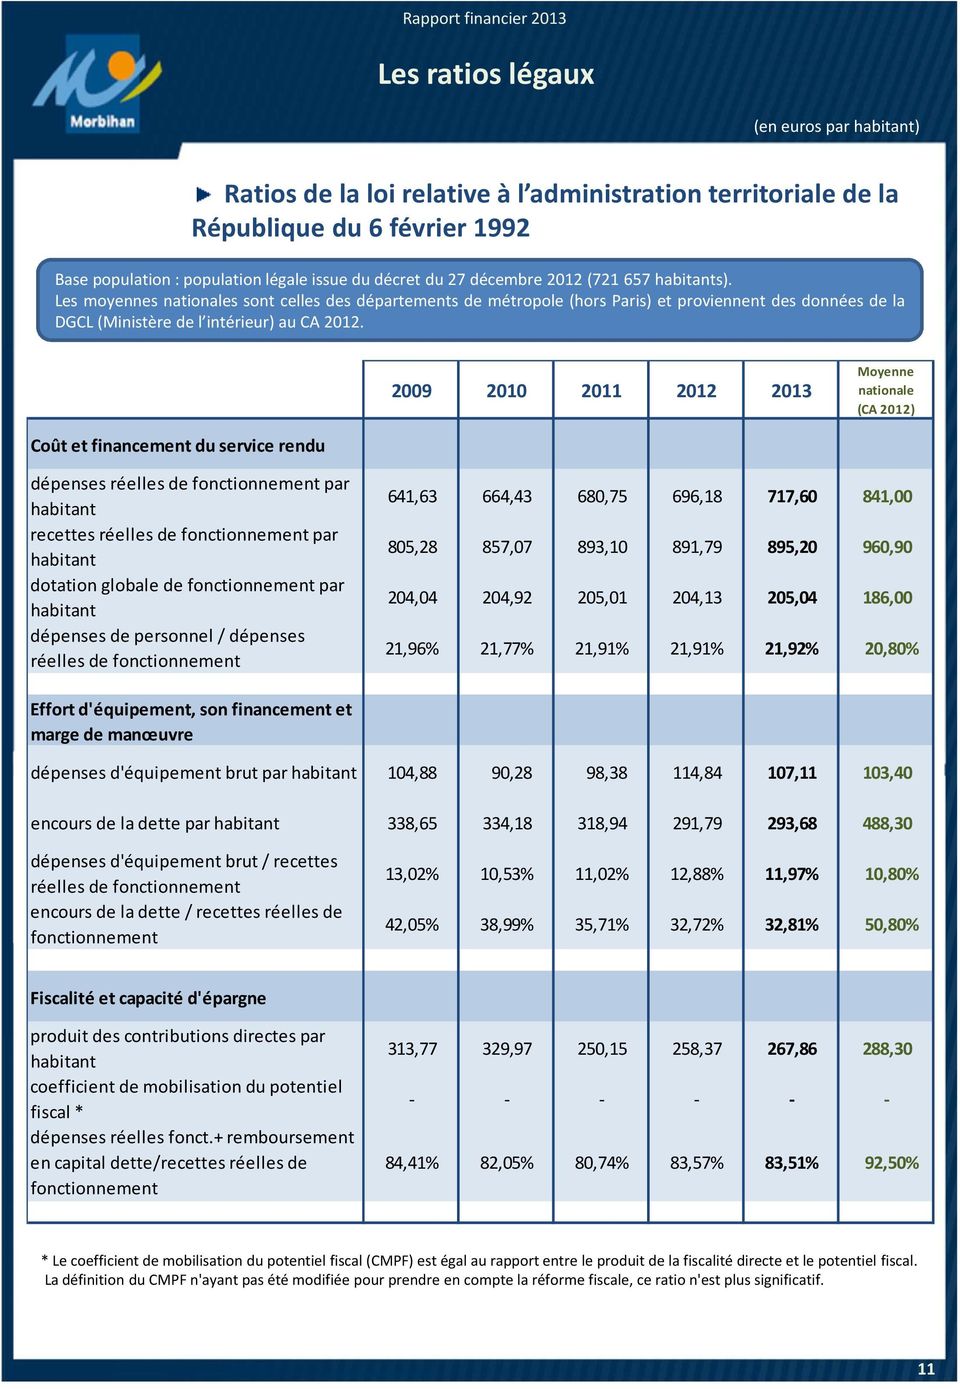 2009 2010 2011 2012 2013 Moyenne nationale (CA 2012) Coût et financement du service rendu dépenses réelles de fonctionnement par habitant recettes réelles de fonctionnement par habitant dotation